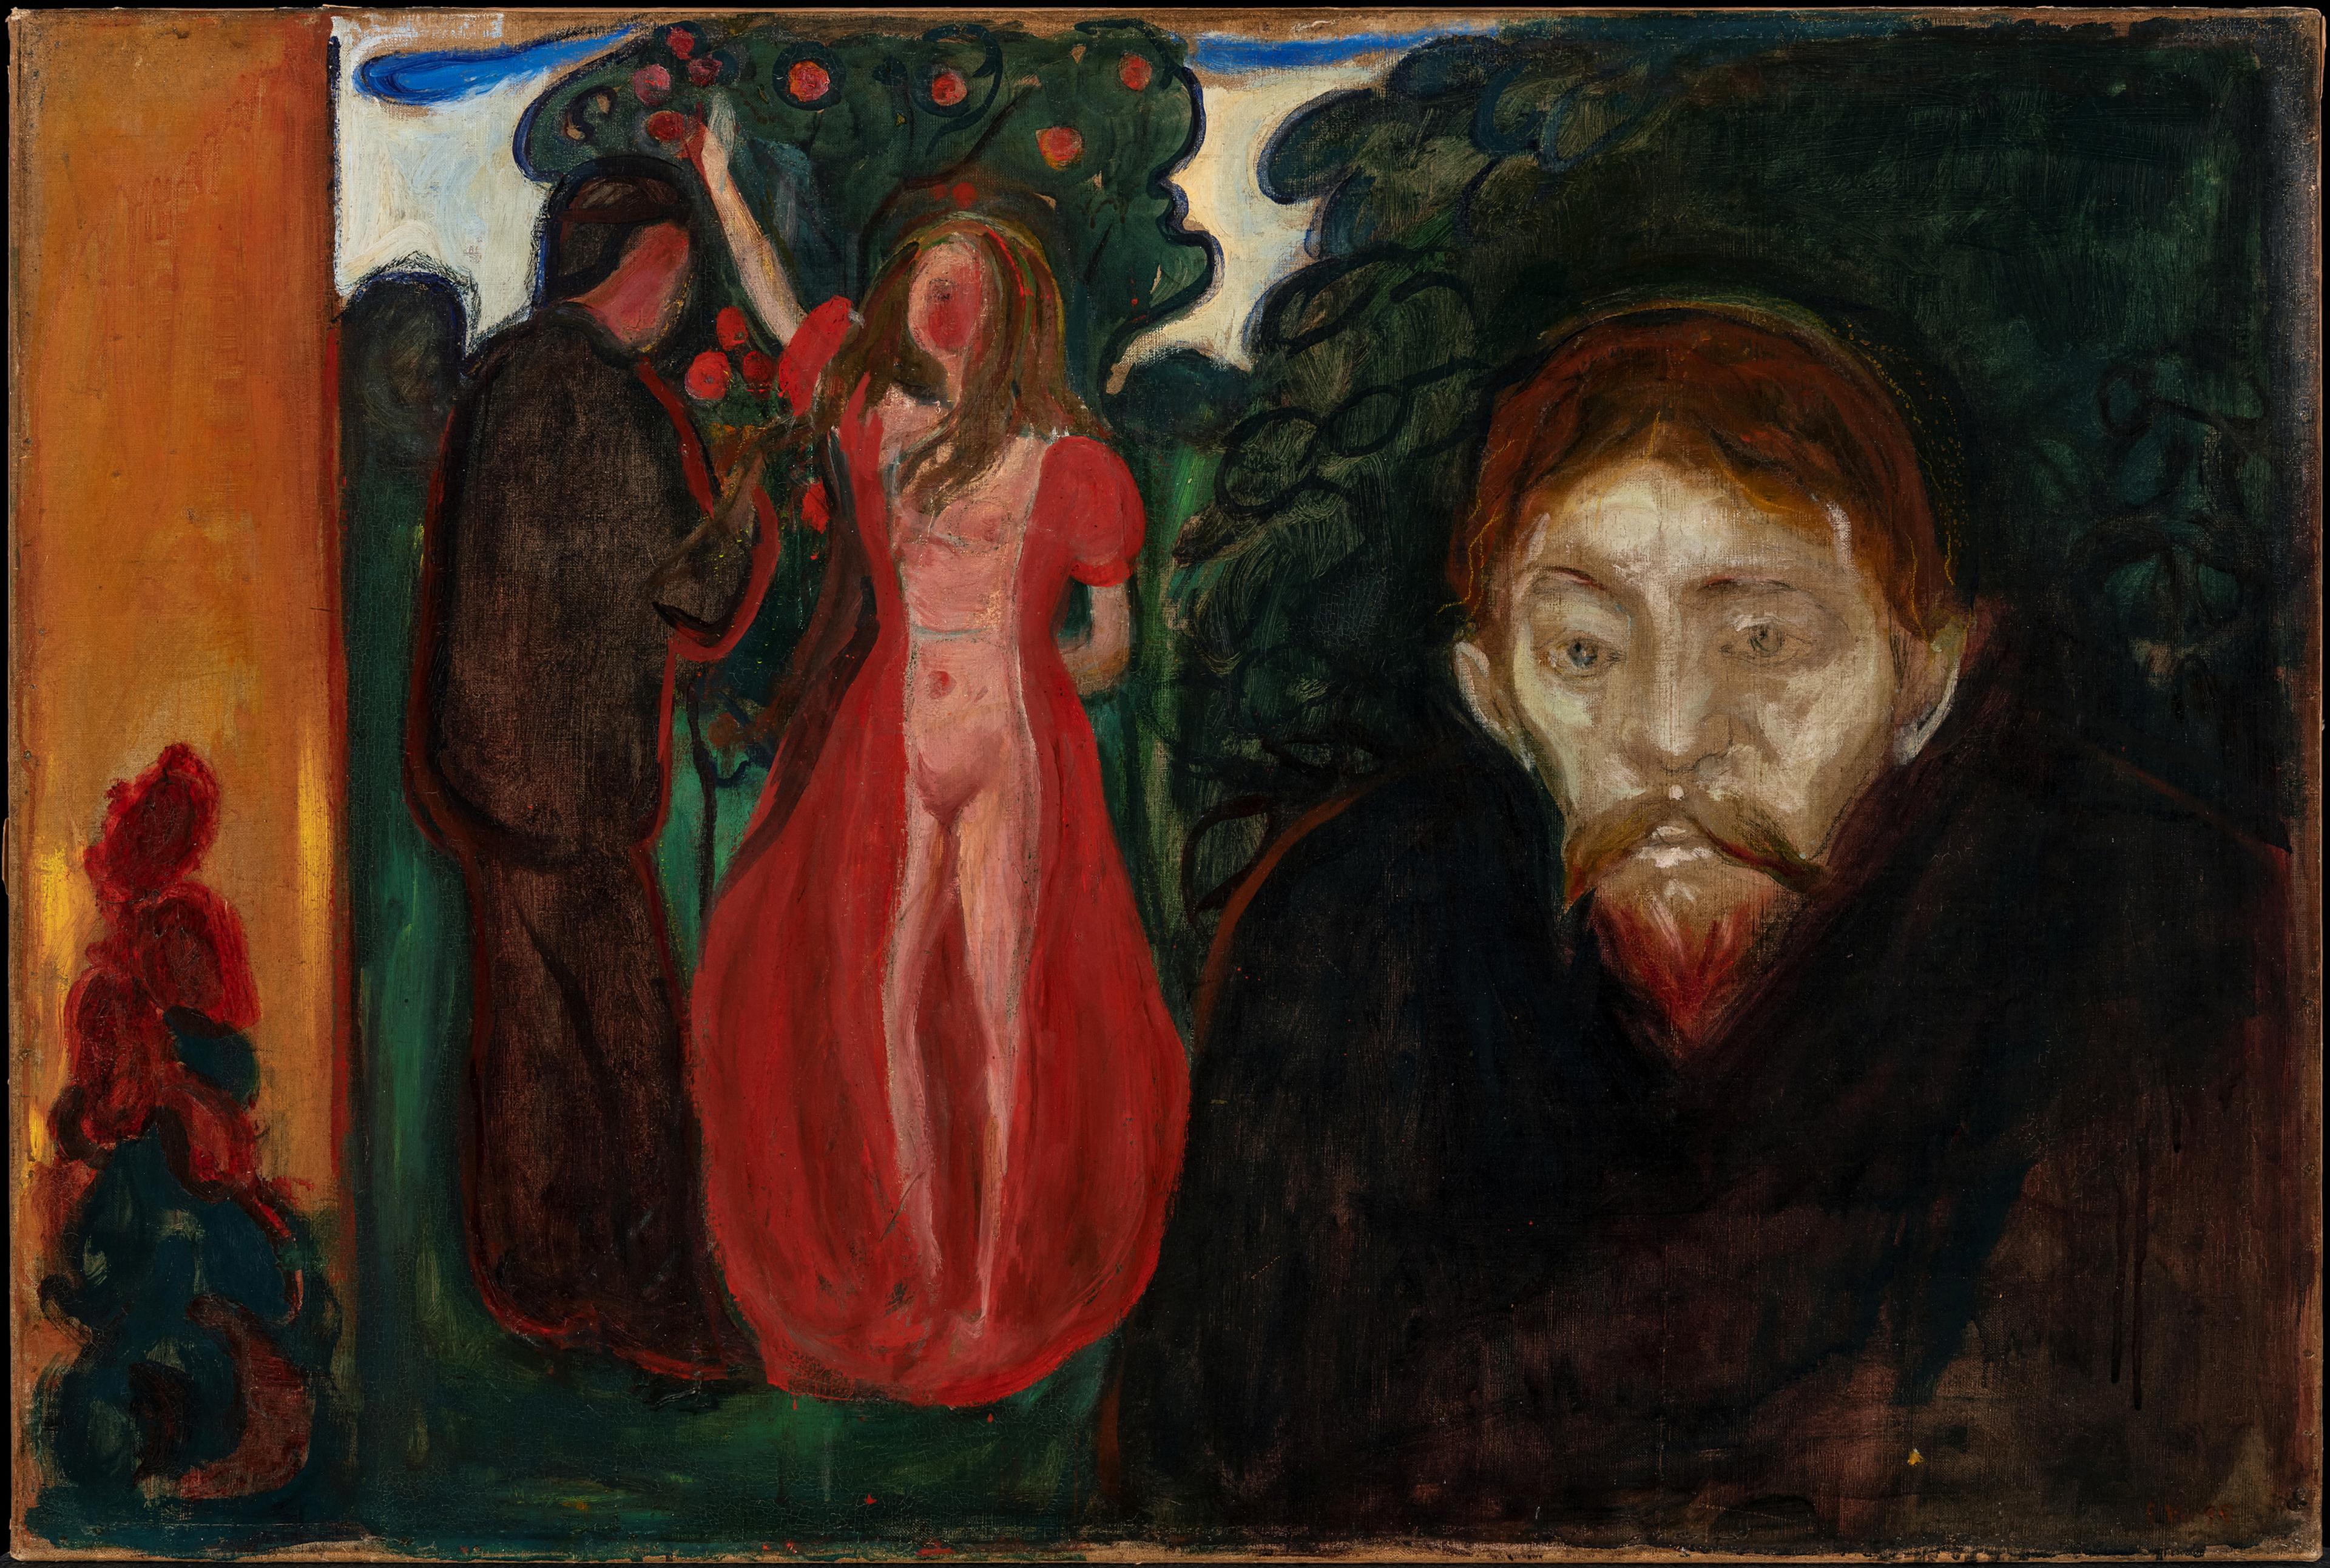 Et maleri av Munch som viser en mann som står i forgrunnen med et dystert uttrykk og mørke klær. I bakgrunnen står en kvinne og en mann ved et epletre. Mannen har mørke klær og er vendt mot kvinnen, hun har en åpen rød kåpe og er naken under.